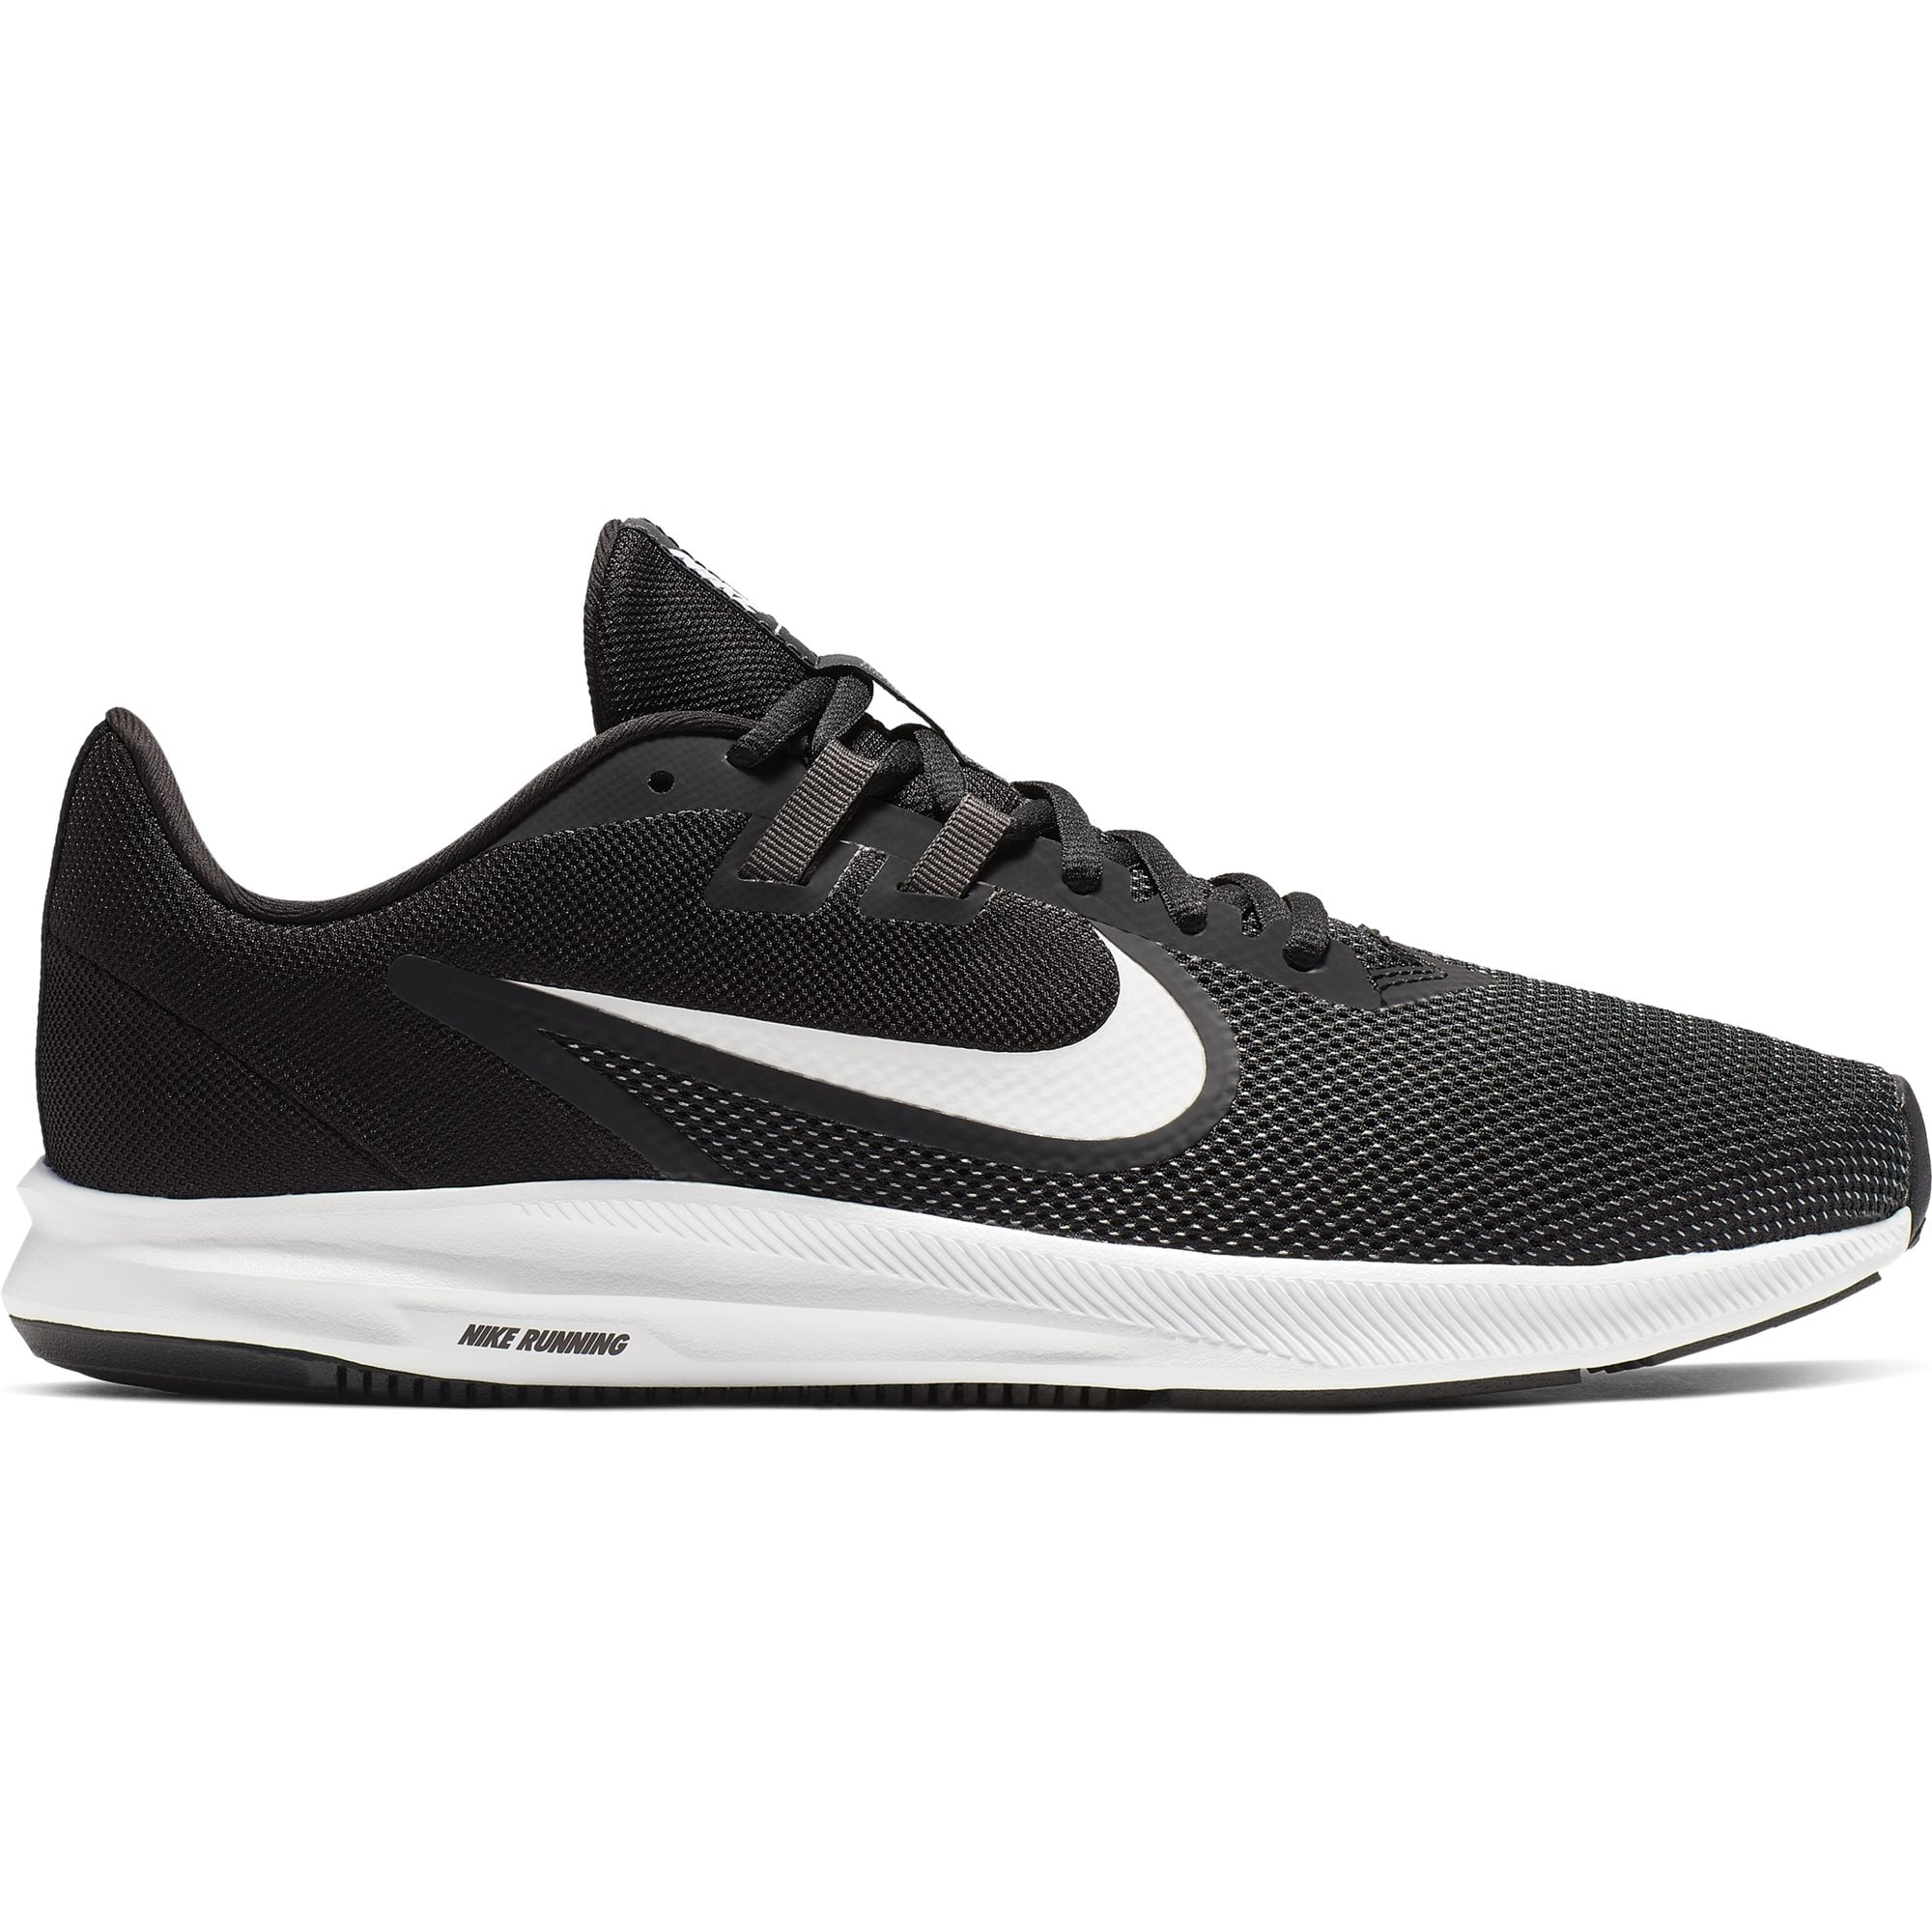 Men's Nike Downshifter 9 Running Shoe - Walmart.com